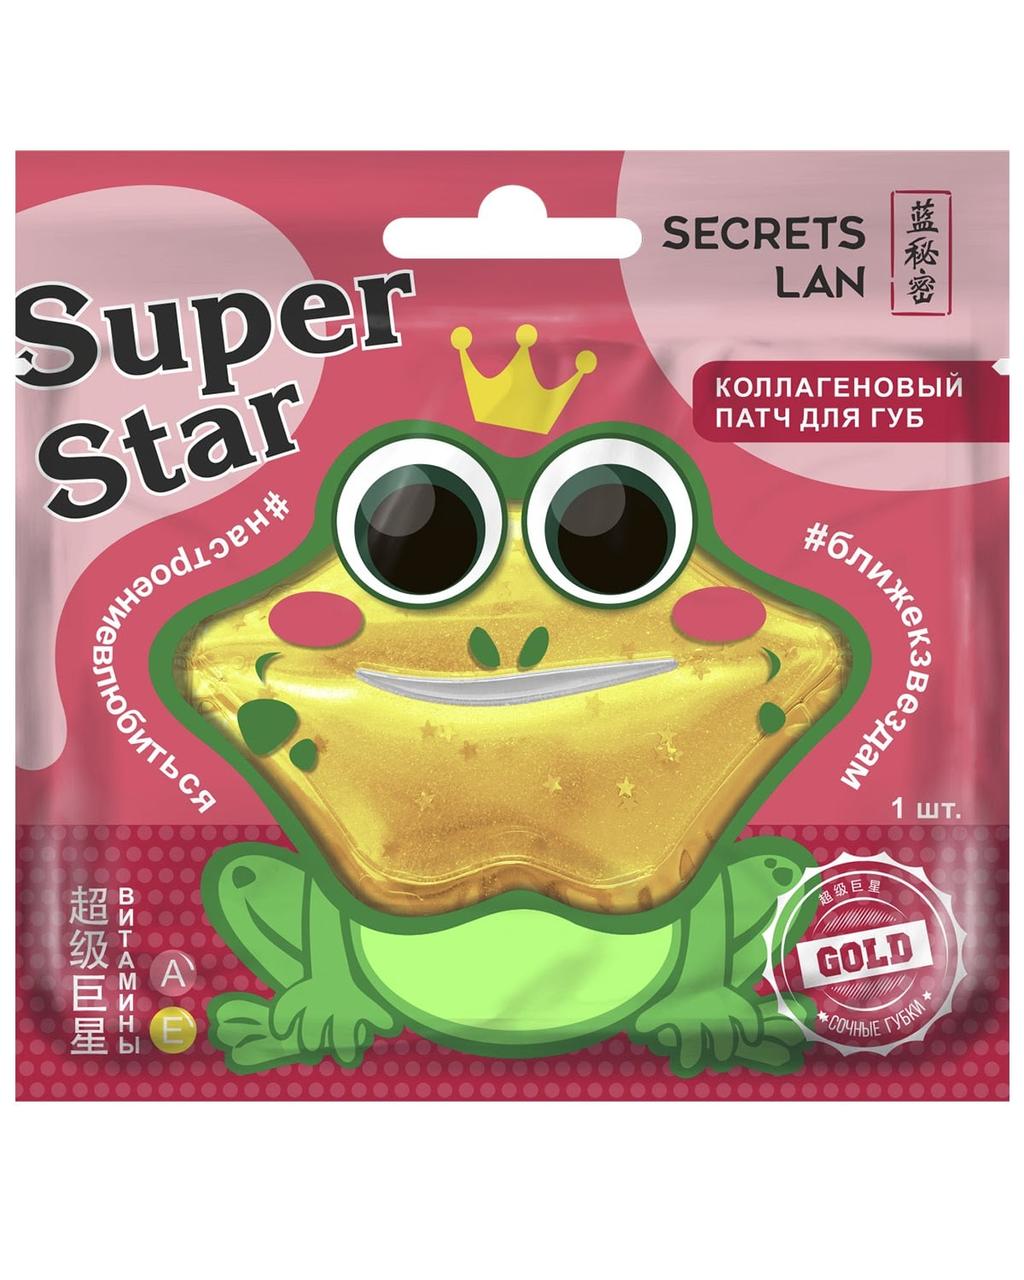 Коллагеновый патч для губ Secrets Lan c витаминами А, Е «Super Star» Gold, (8 г)